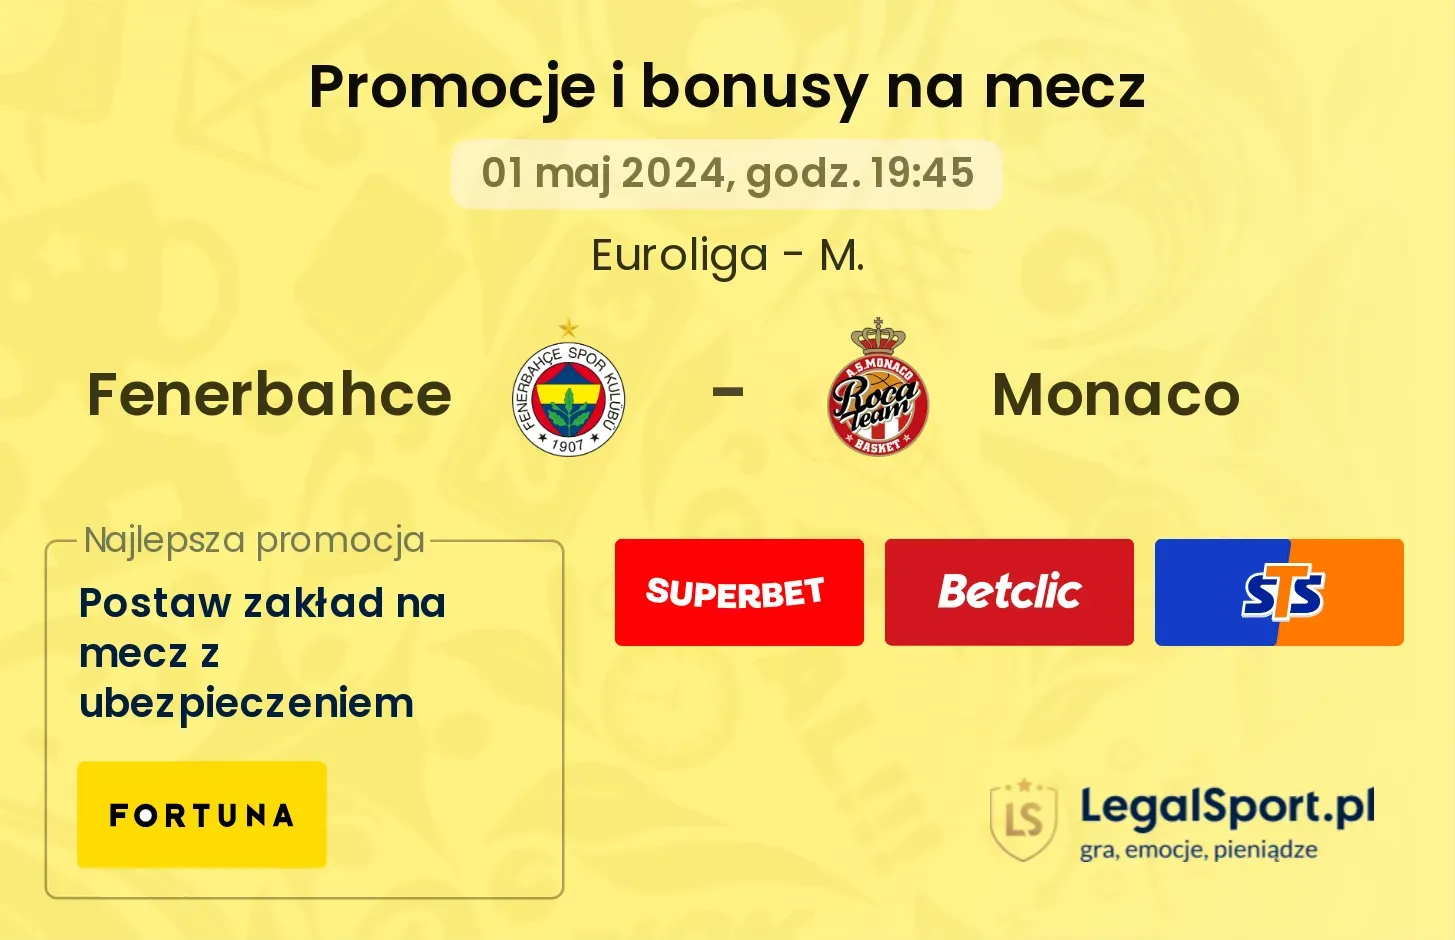 Fenerbahce - Monaco promocje bonusy na mecz